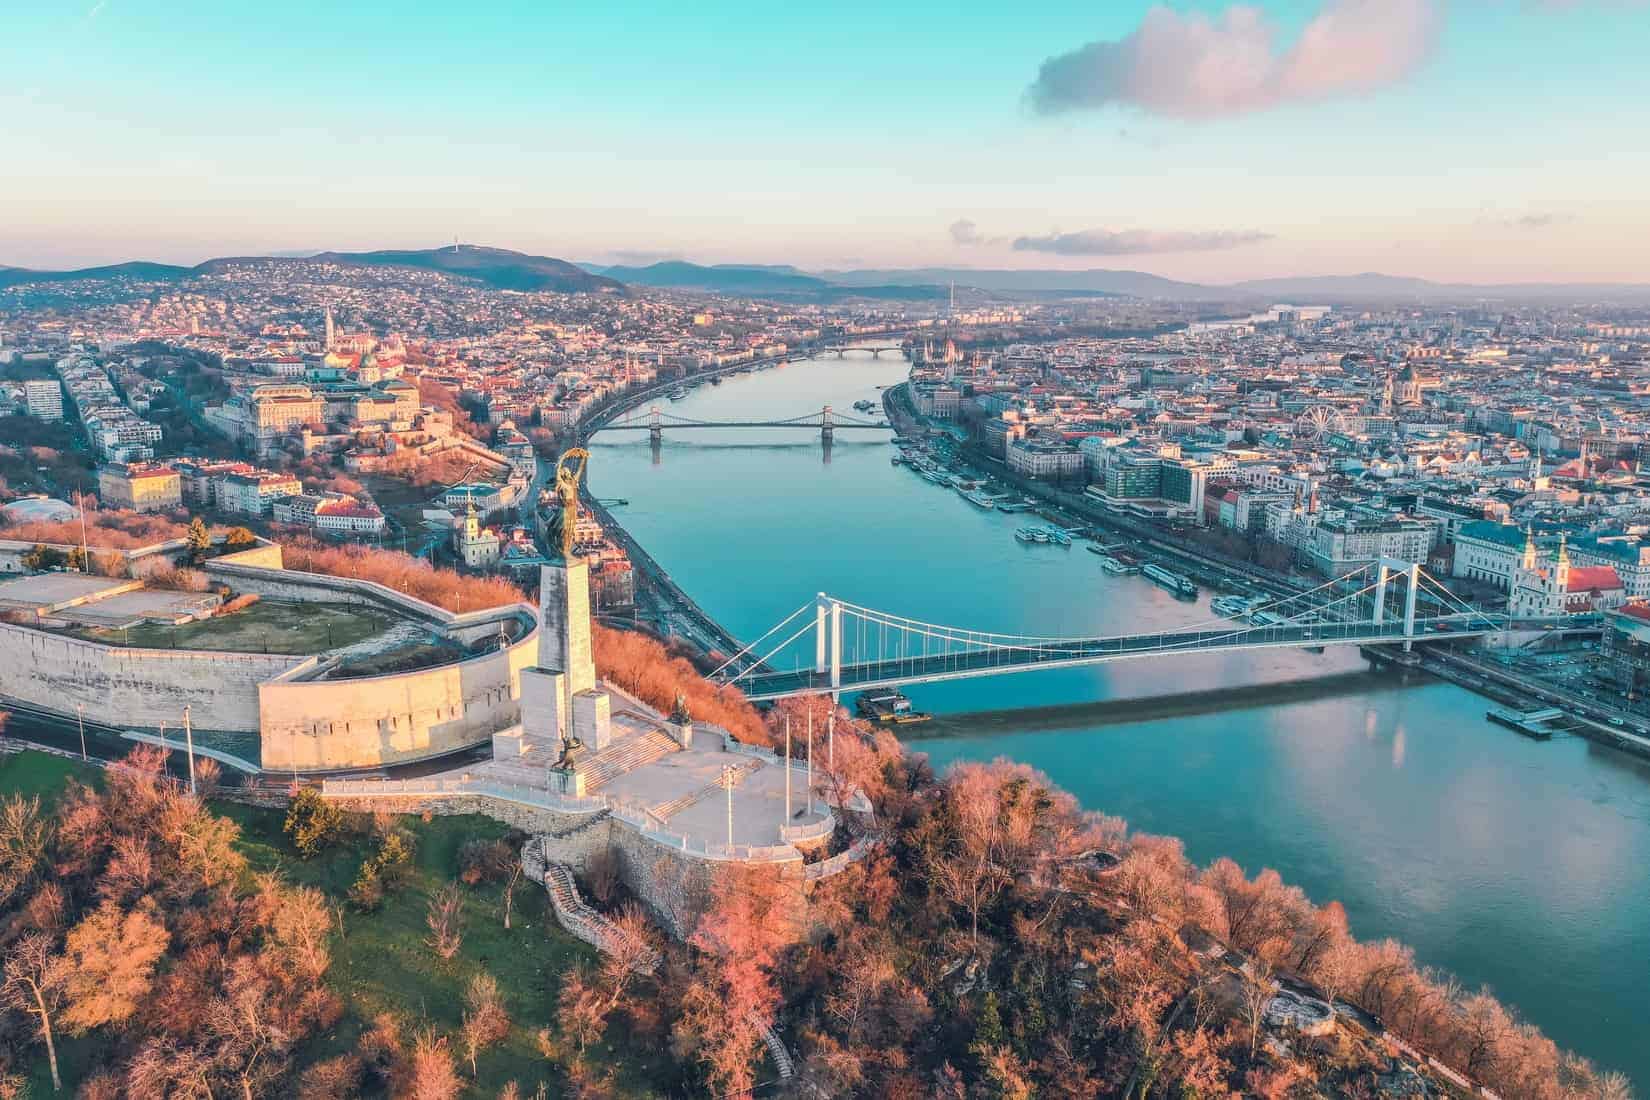 Versicherung als Immobilieninvestor in Budapest - Allianz kauft Bürogebäude